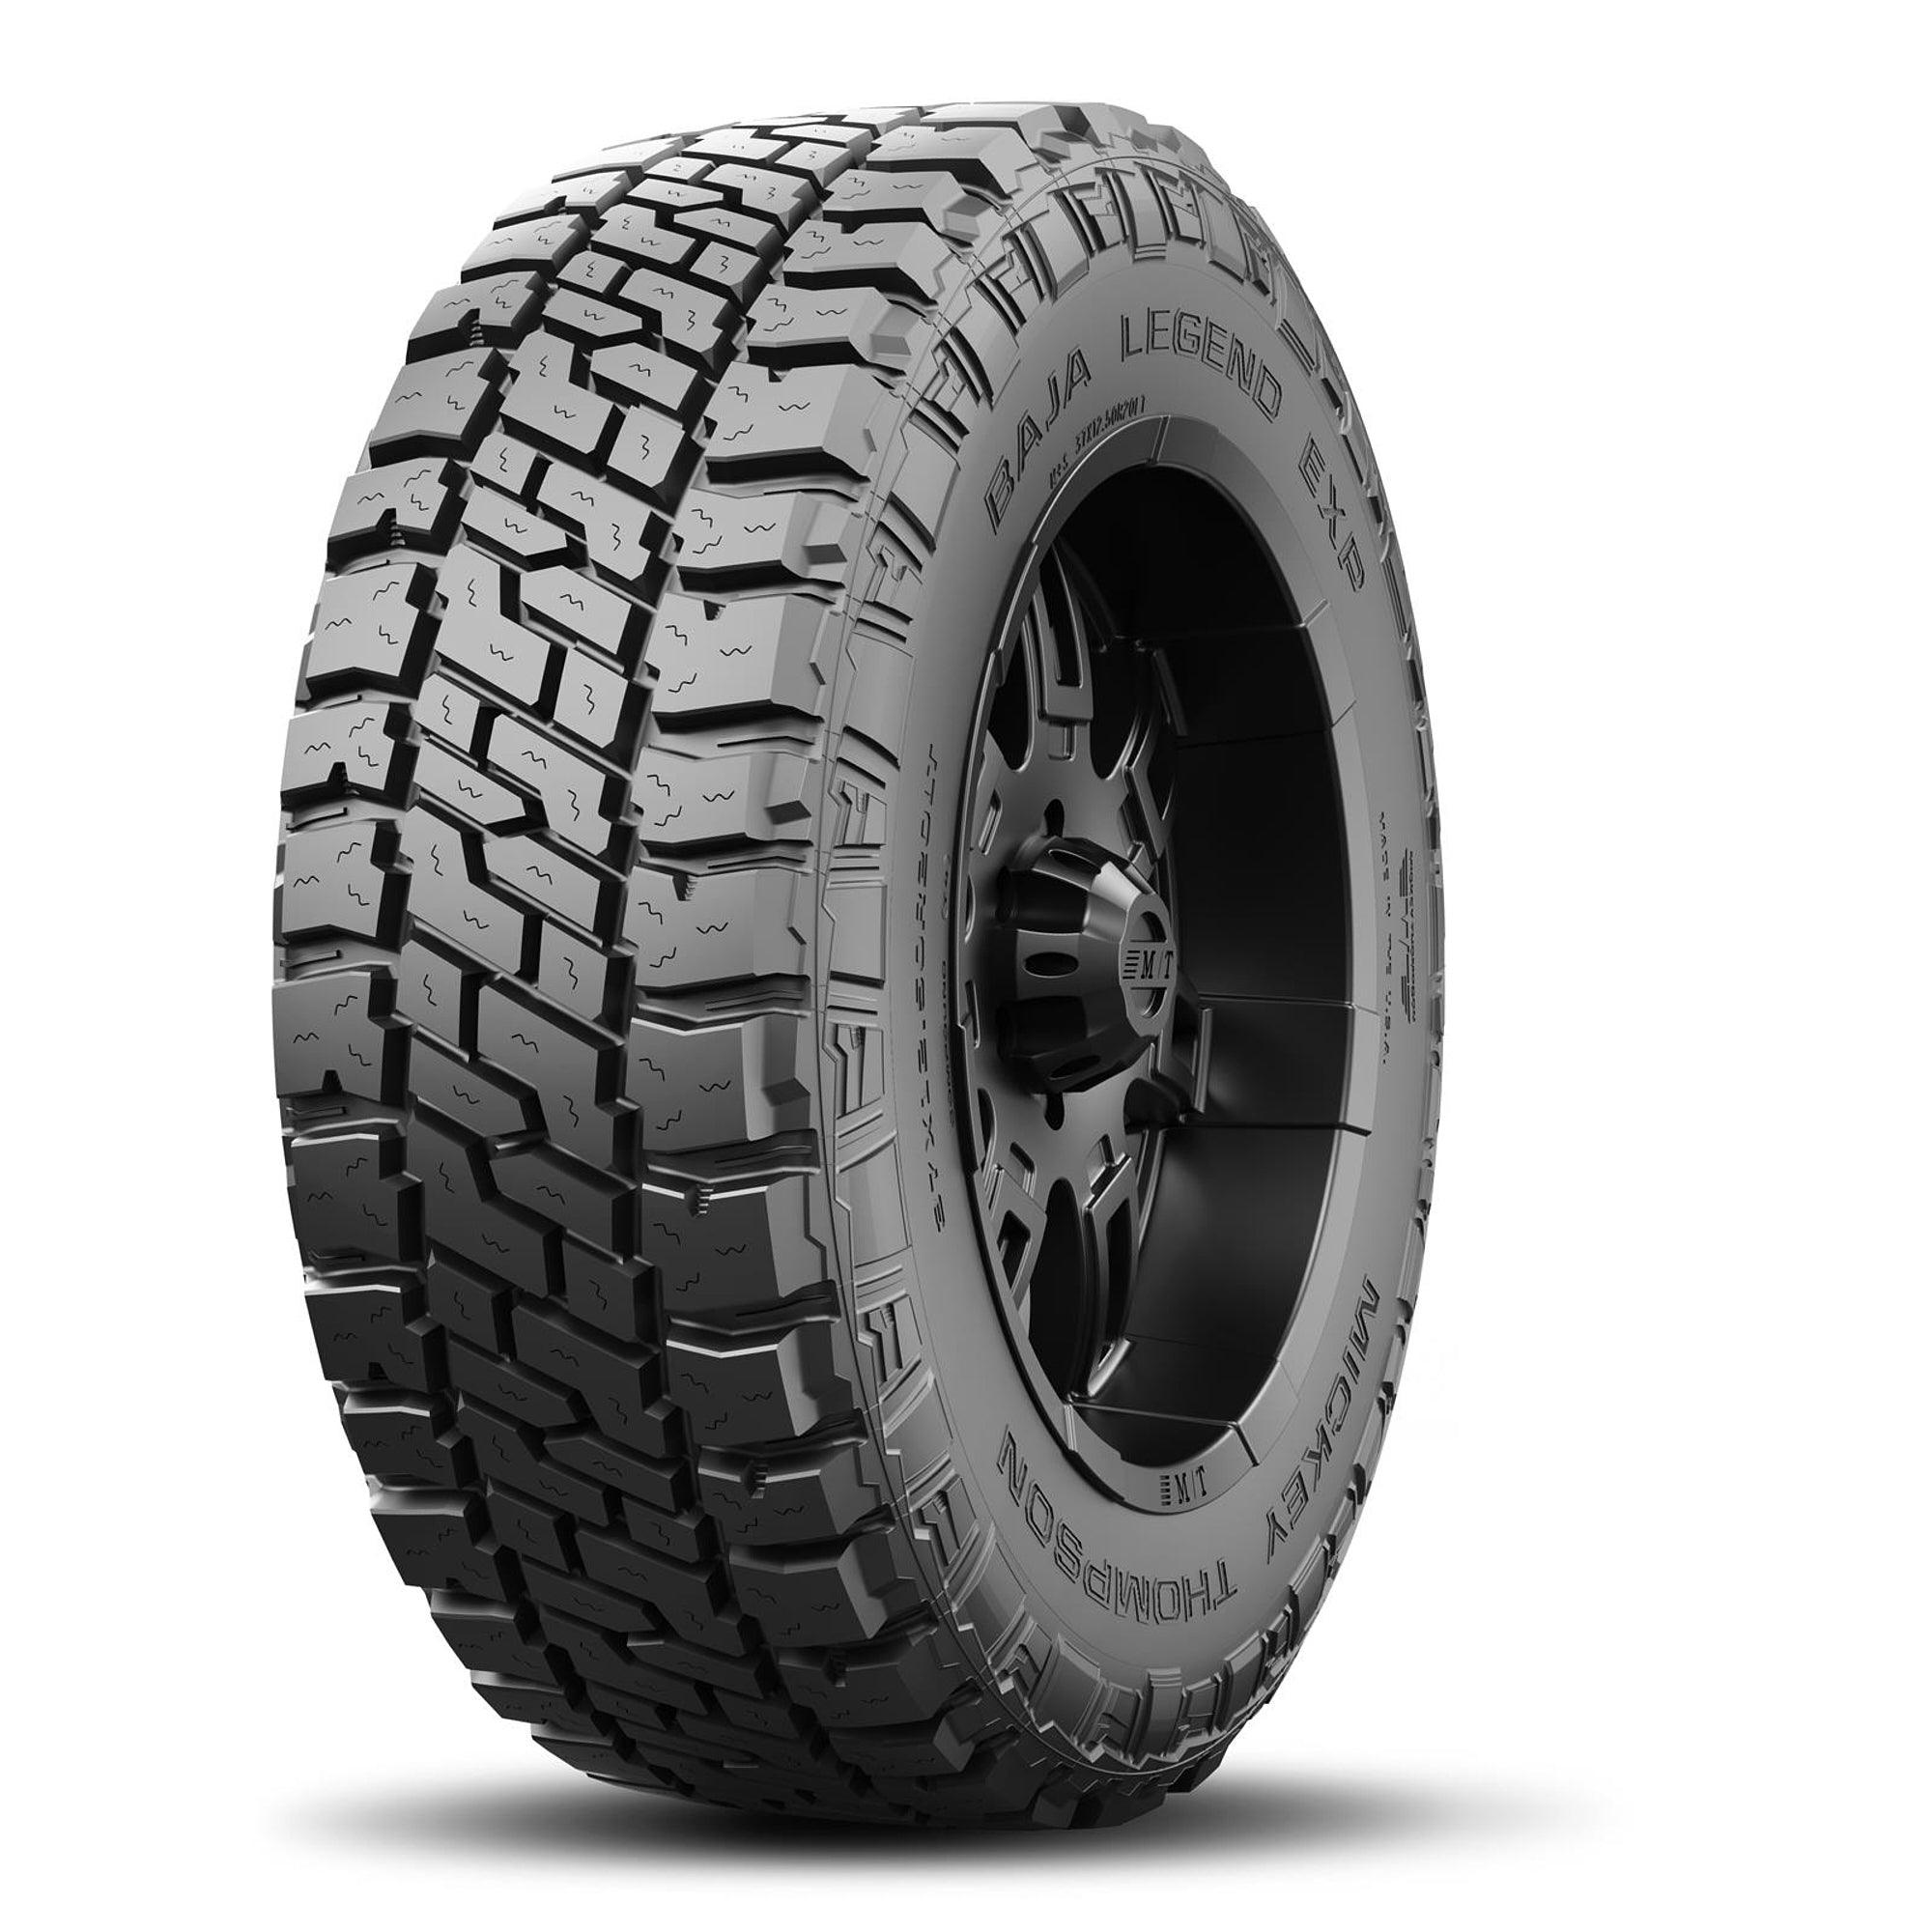 Baja Legend EXP Tire LT295/55R20 123/120Q - Burlile Performance Products